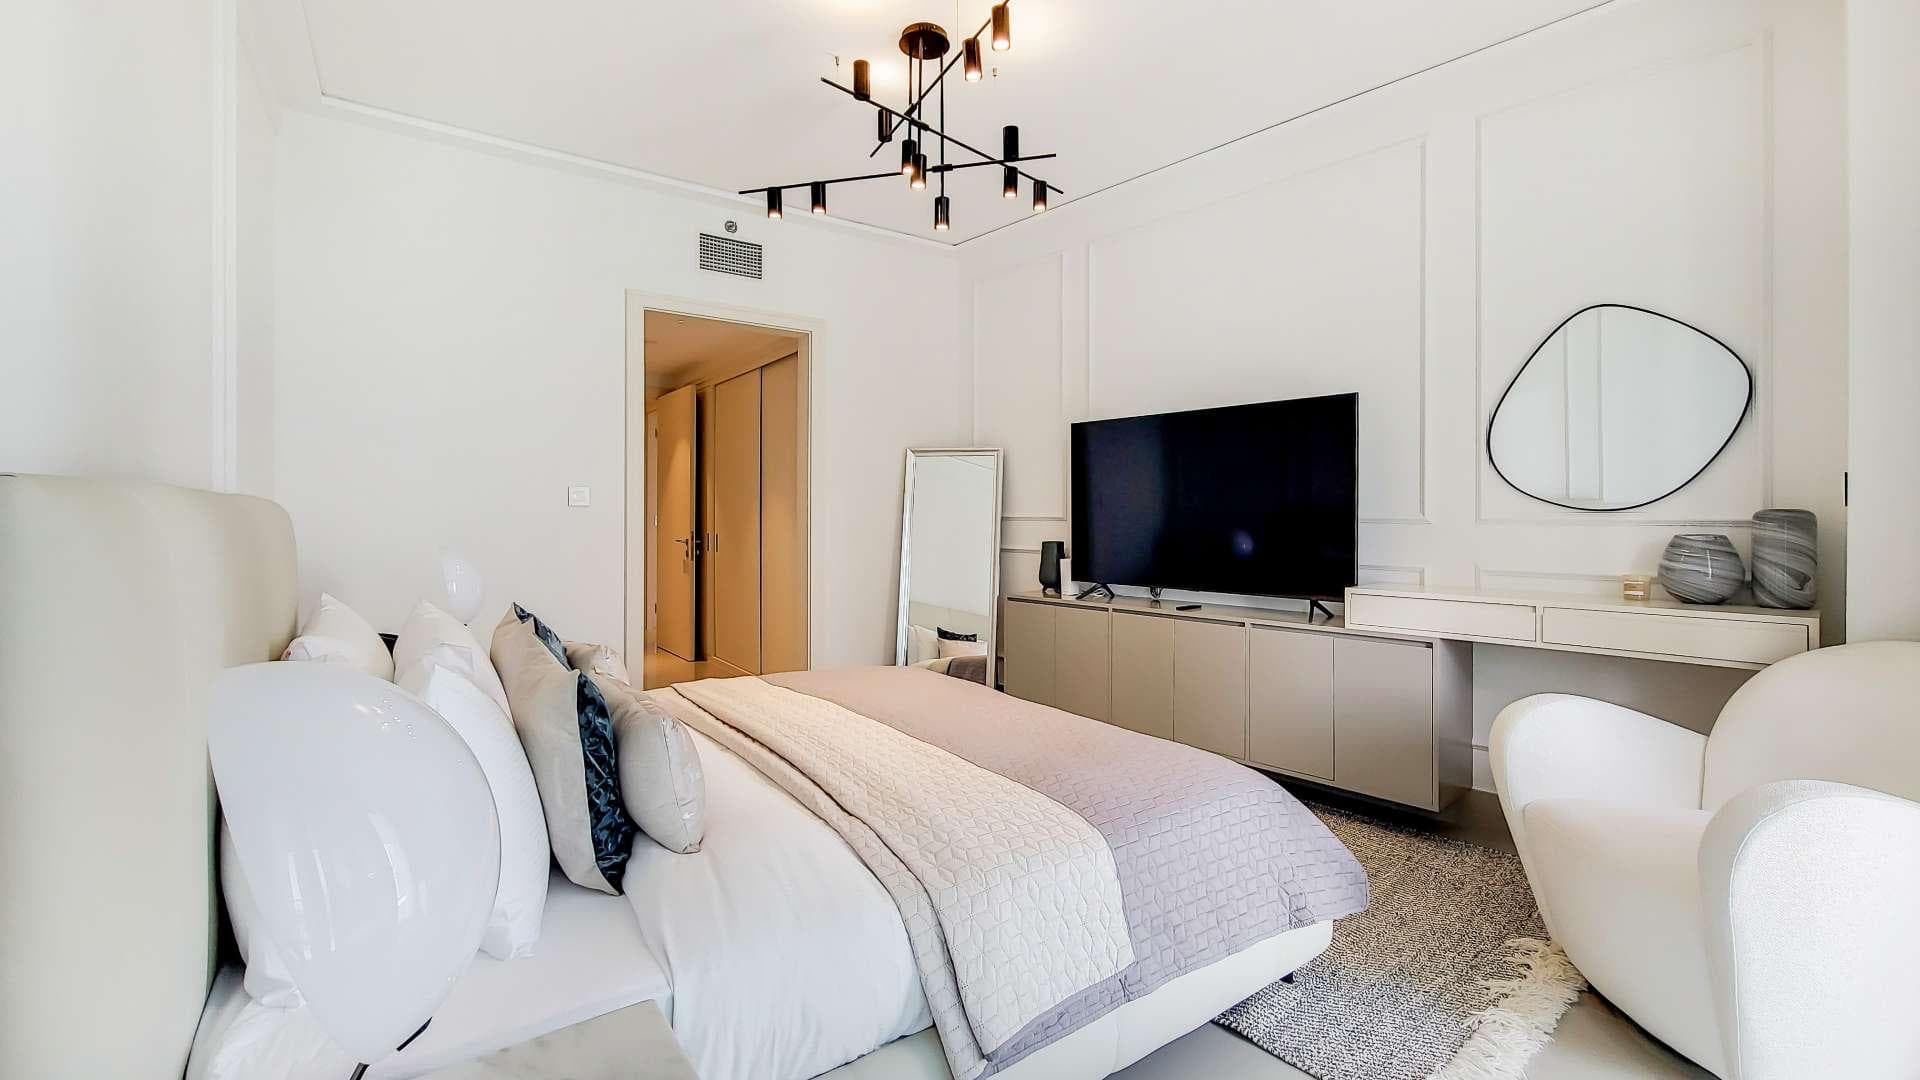 2 Bedroom Apartment For Rent Burj Khalifa Area Lp19995 E8566a29ca9ad80.jpg